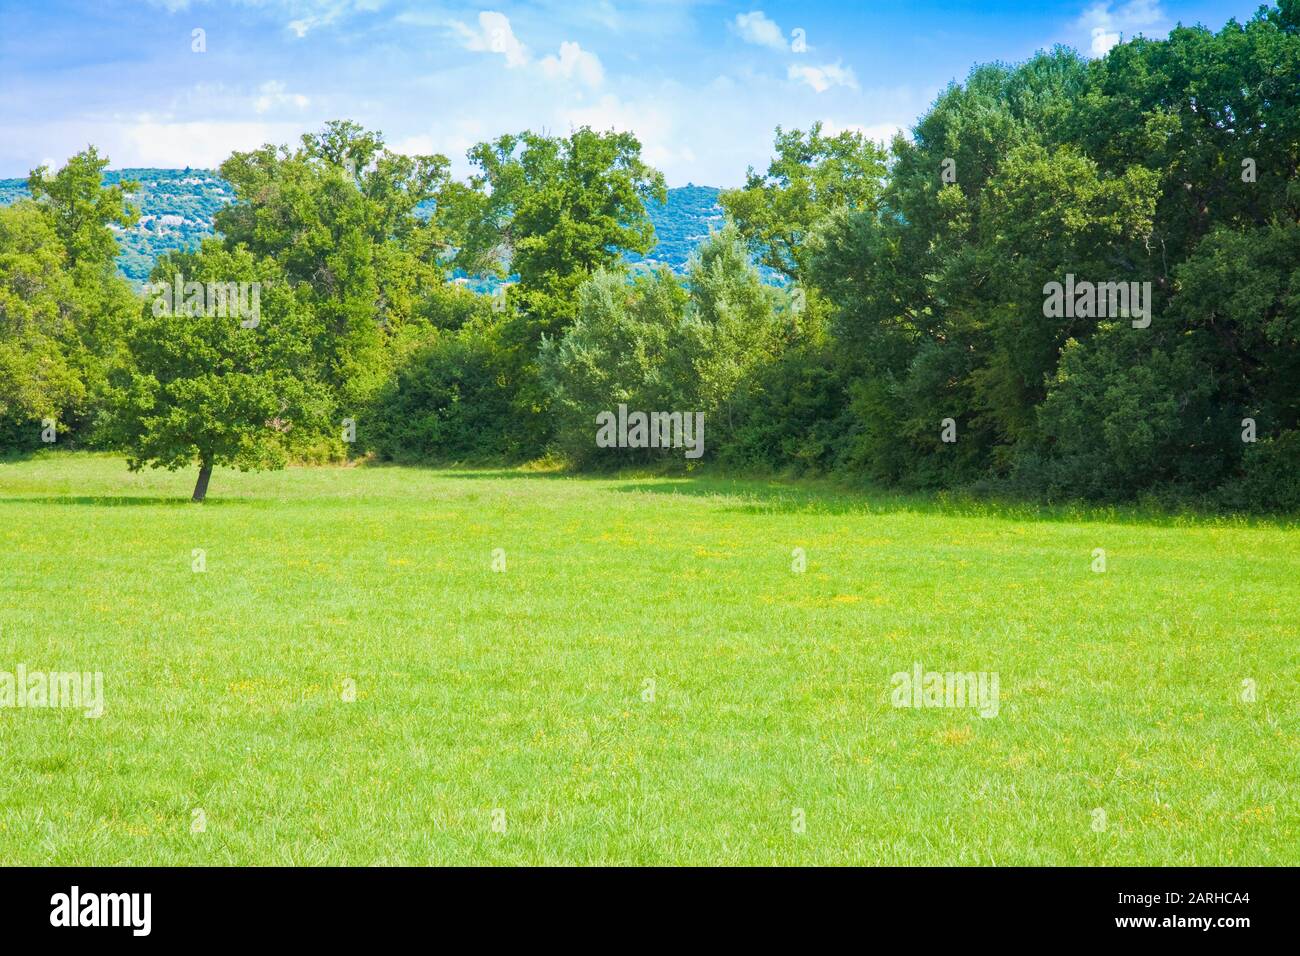 Escena rural con un campo verde, hierba y árboles en el fondo. Foto de stock